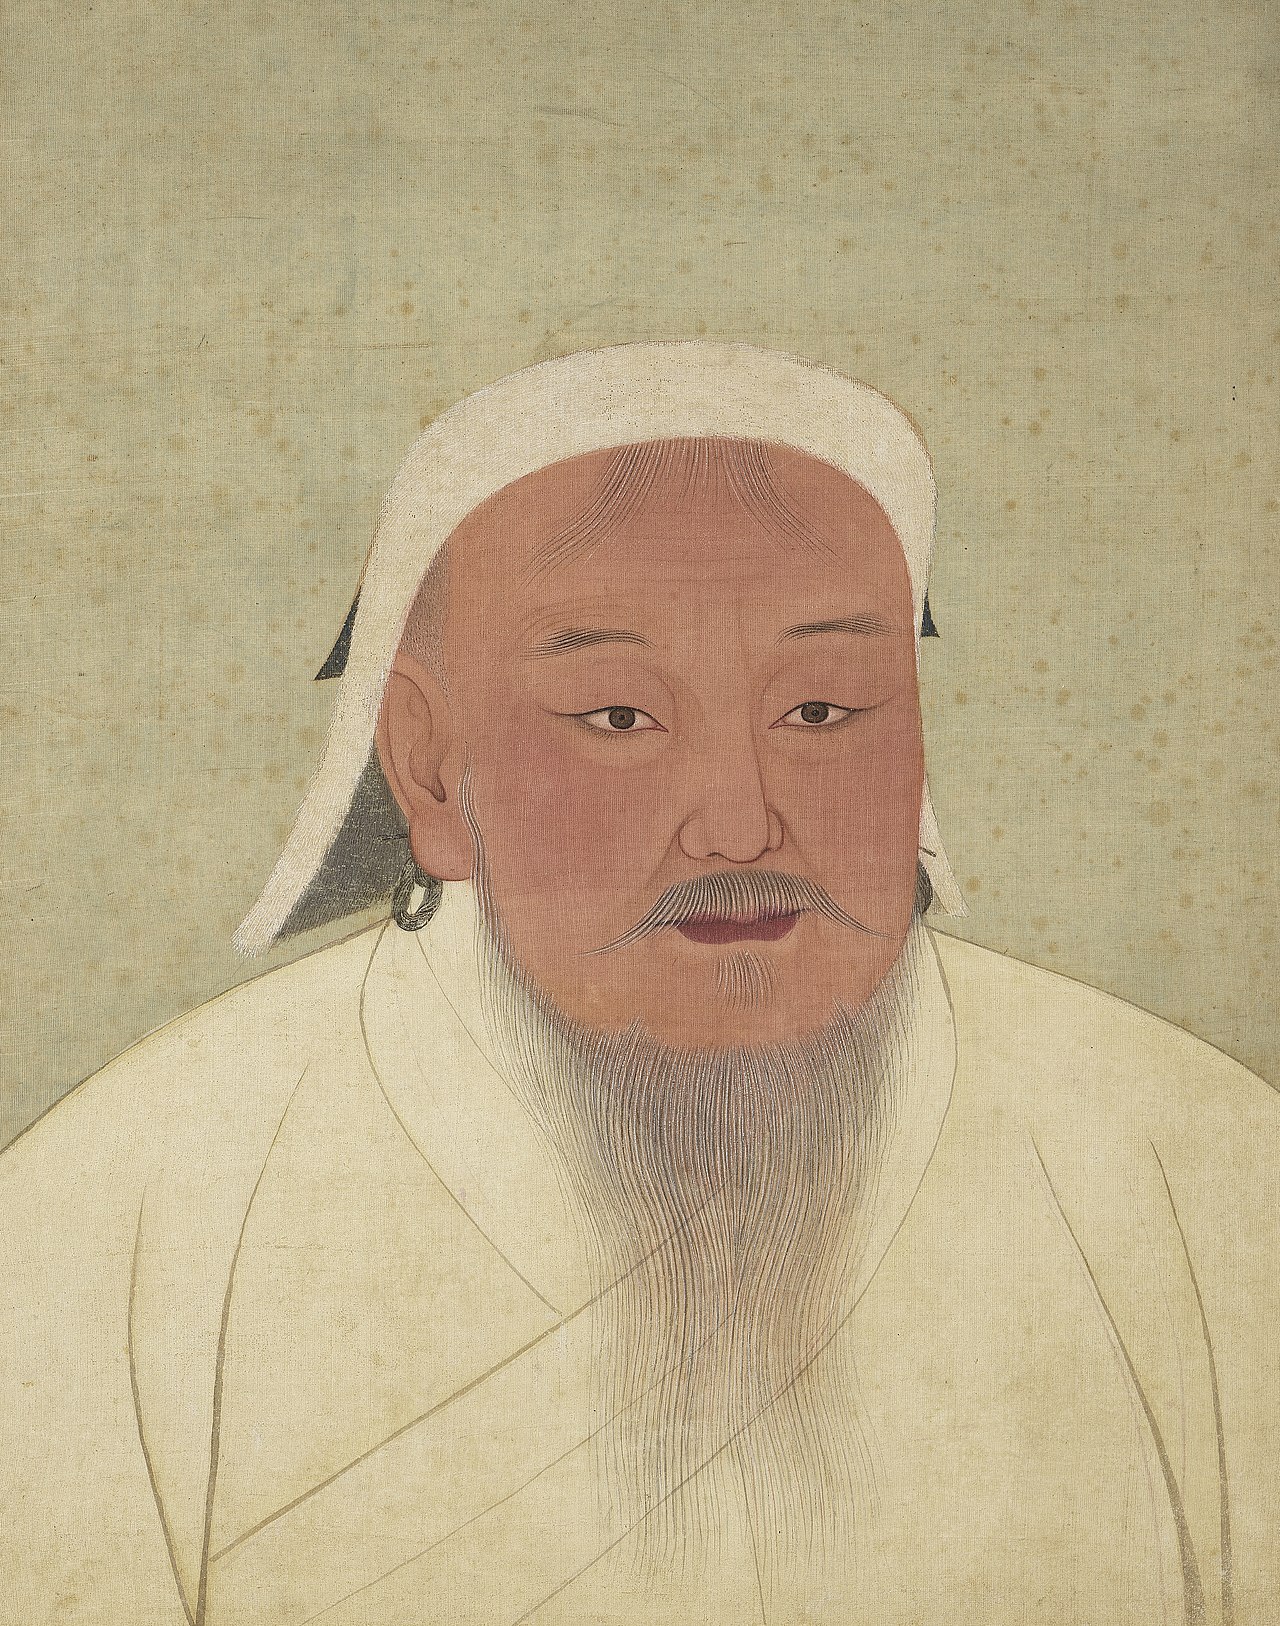 成吉思汗 第1任蒙古大汗、大元政权奠基人 - 俊才汇-俊才汇